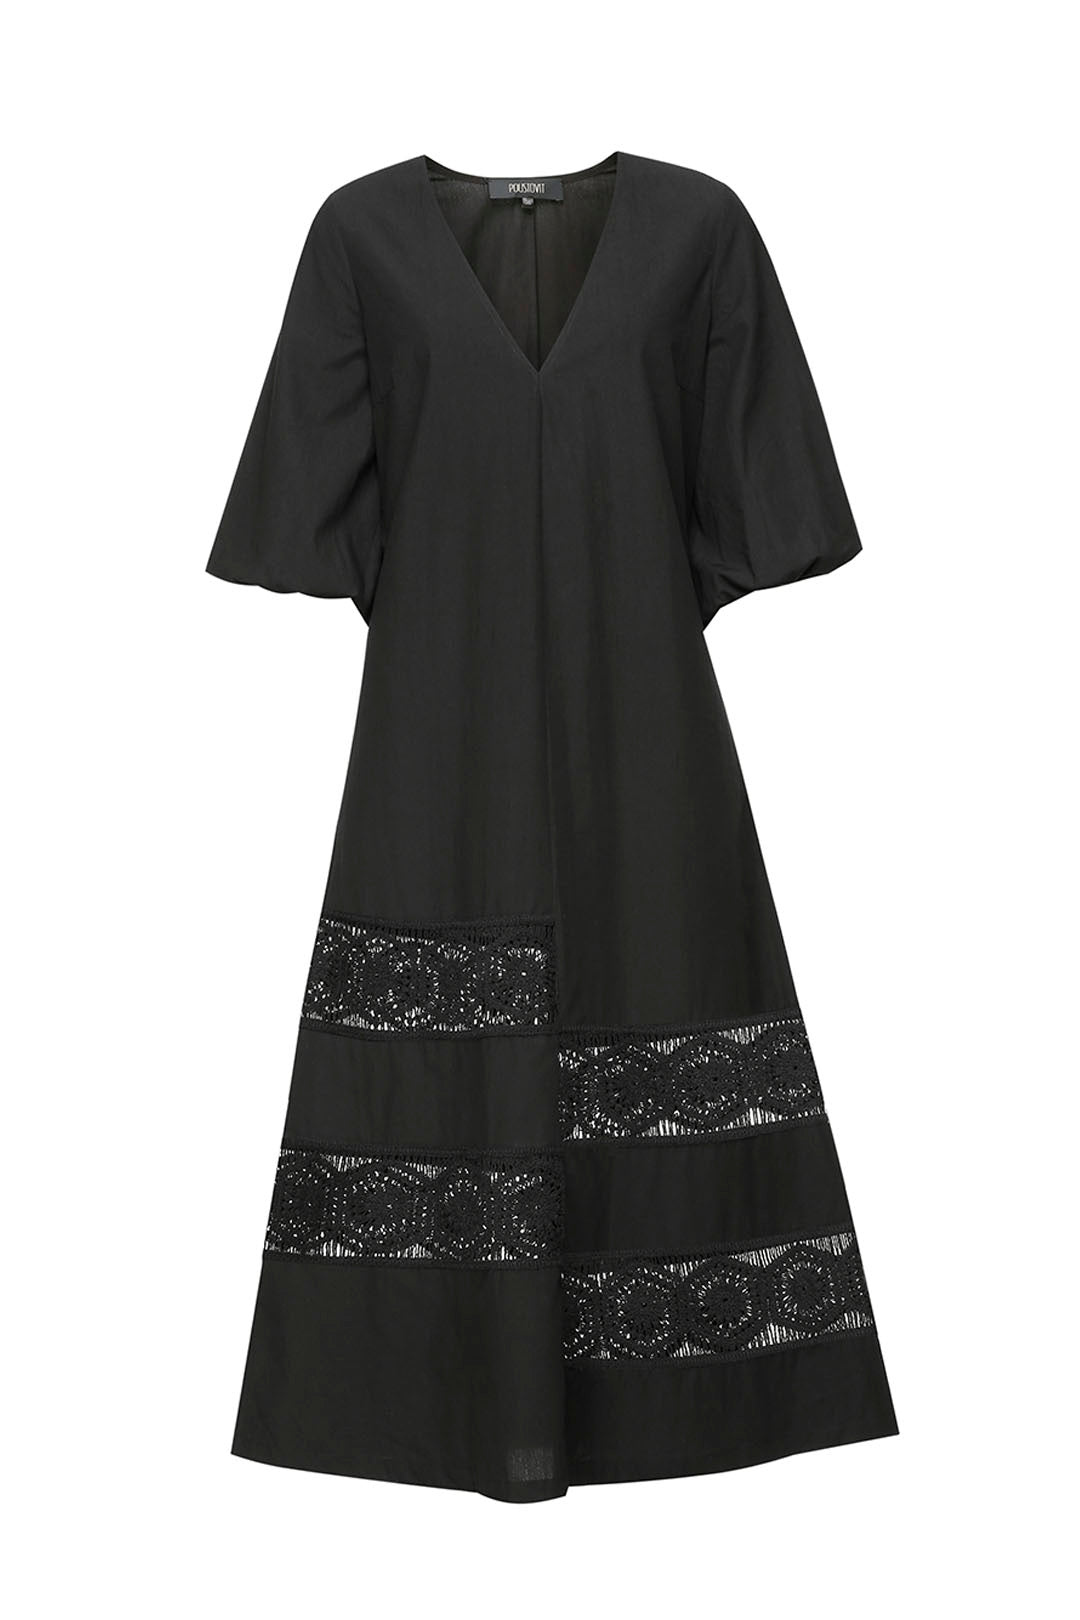 Black cotton dress with lace details